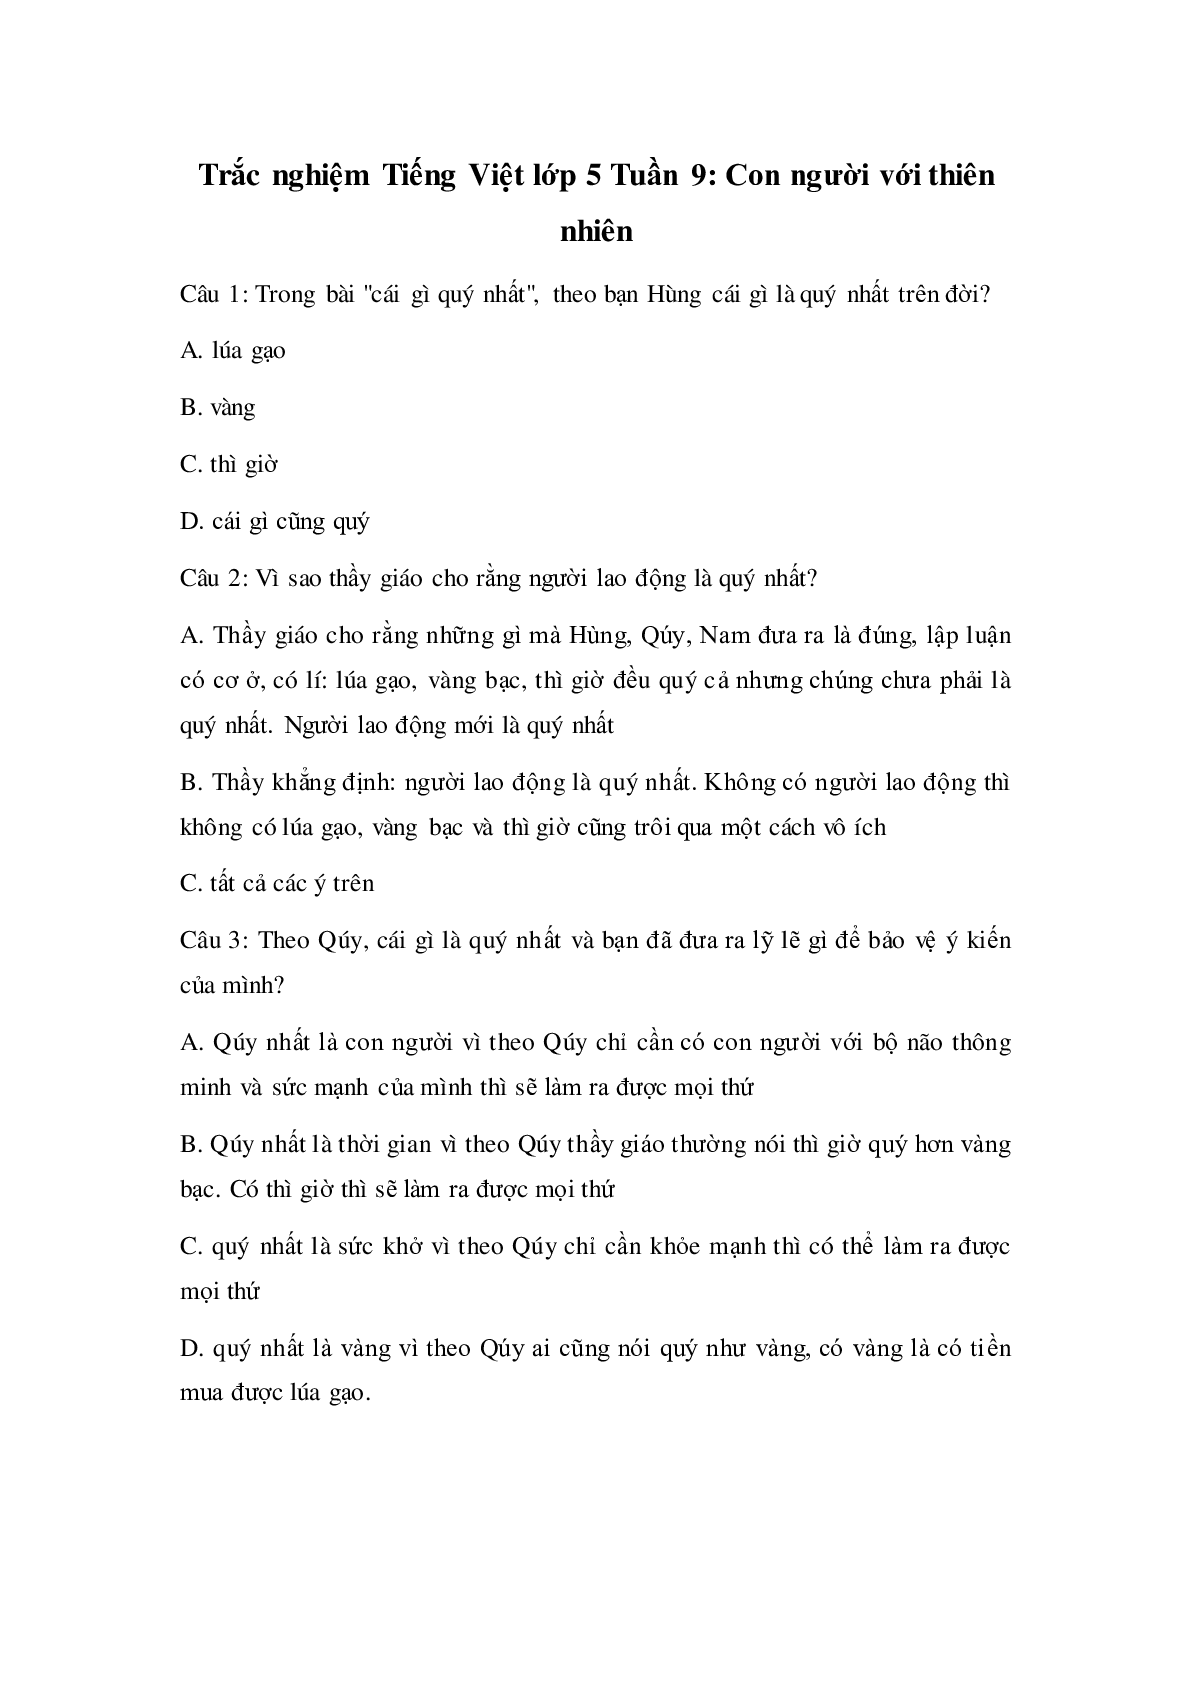 Trắc nghiệm Tiếng Việt lớp 5: Tuần 9 có đáp án (trang 1)